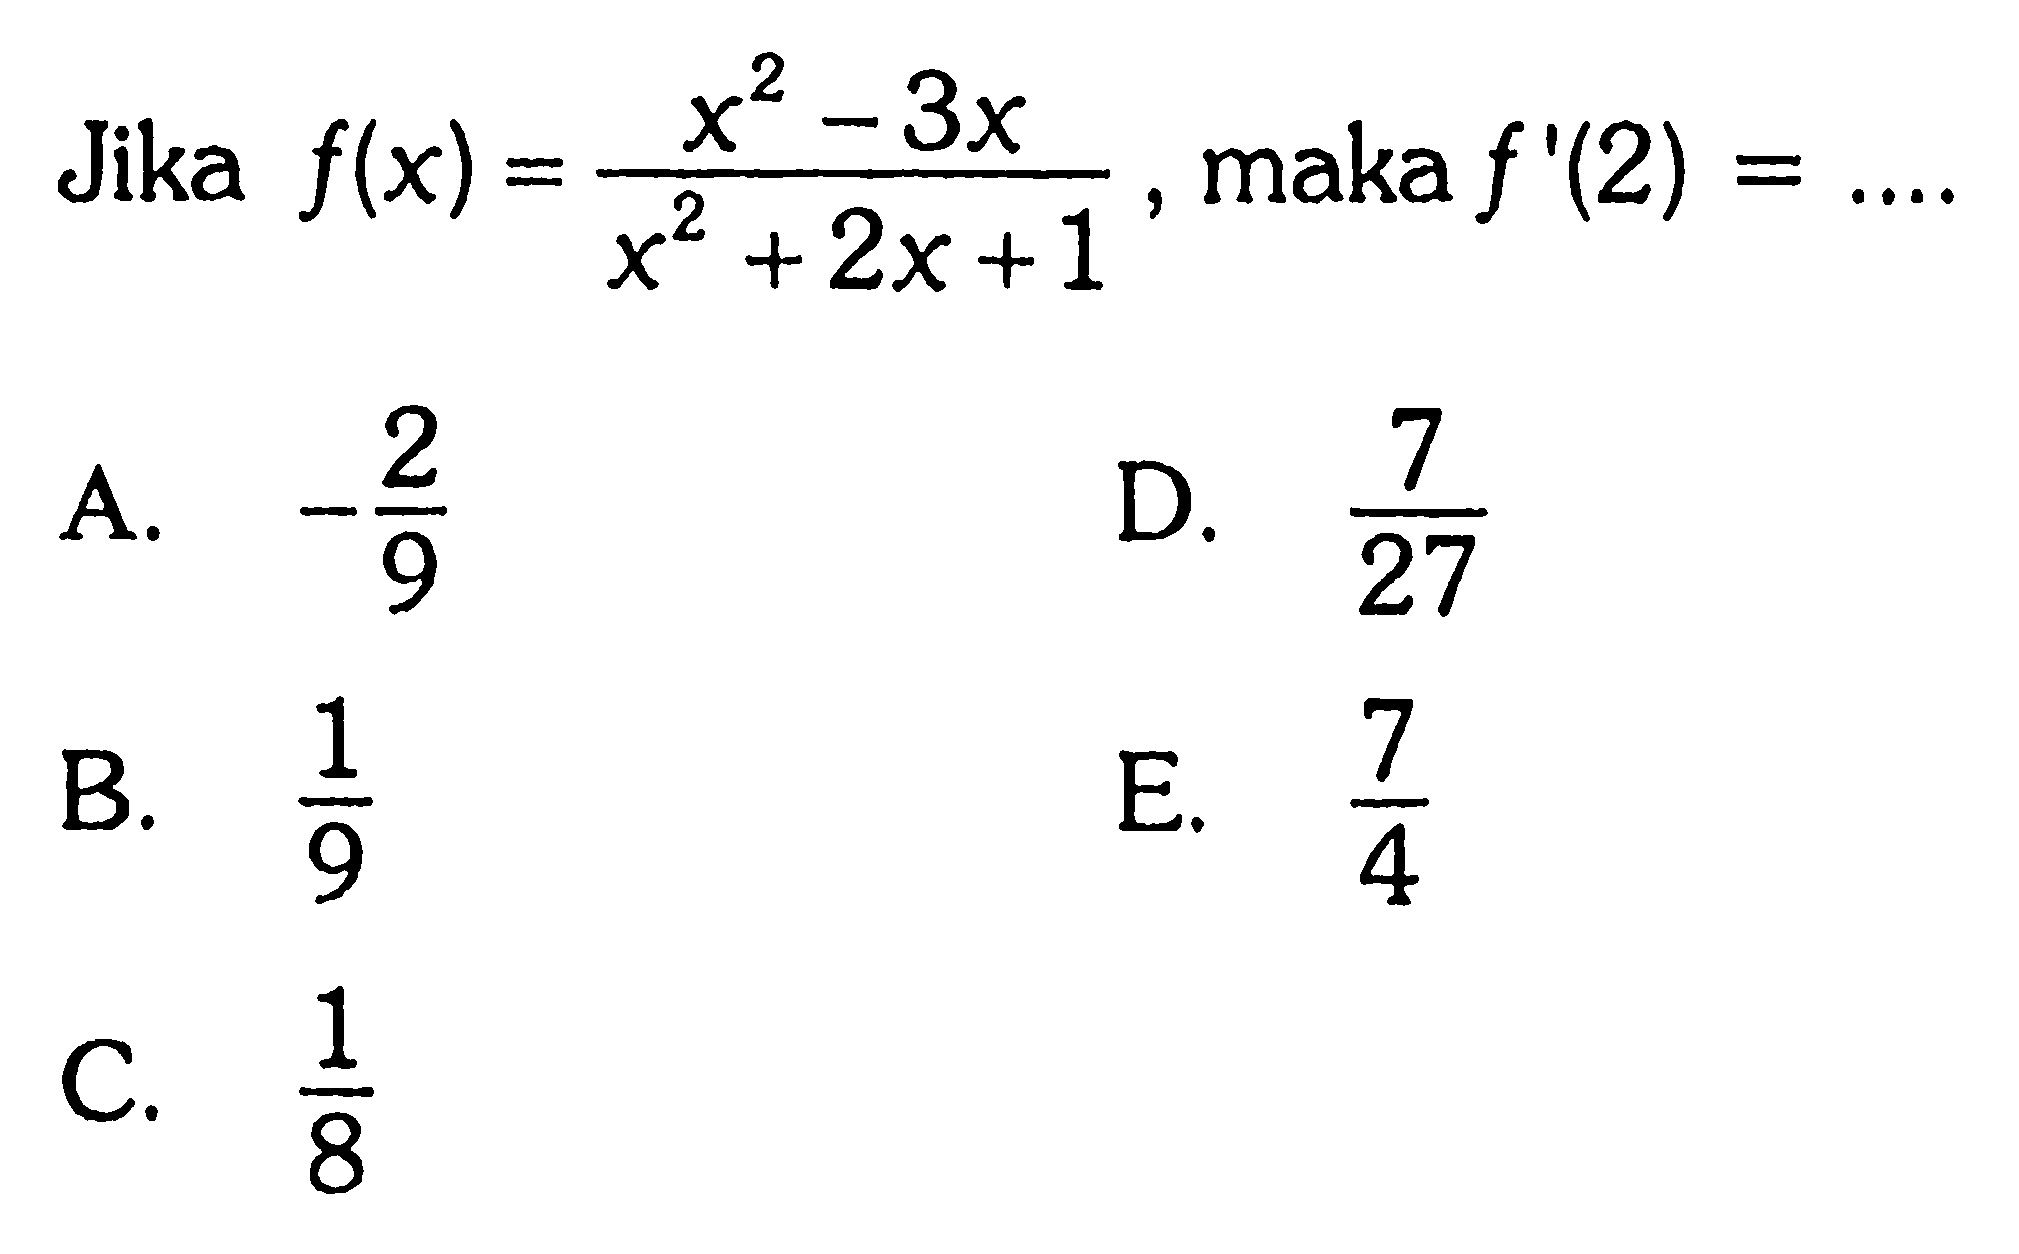 Jika f(x)=(x^2-3x)/(x^2+2x+1), maka f'(2)=